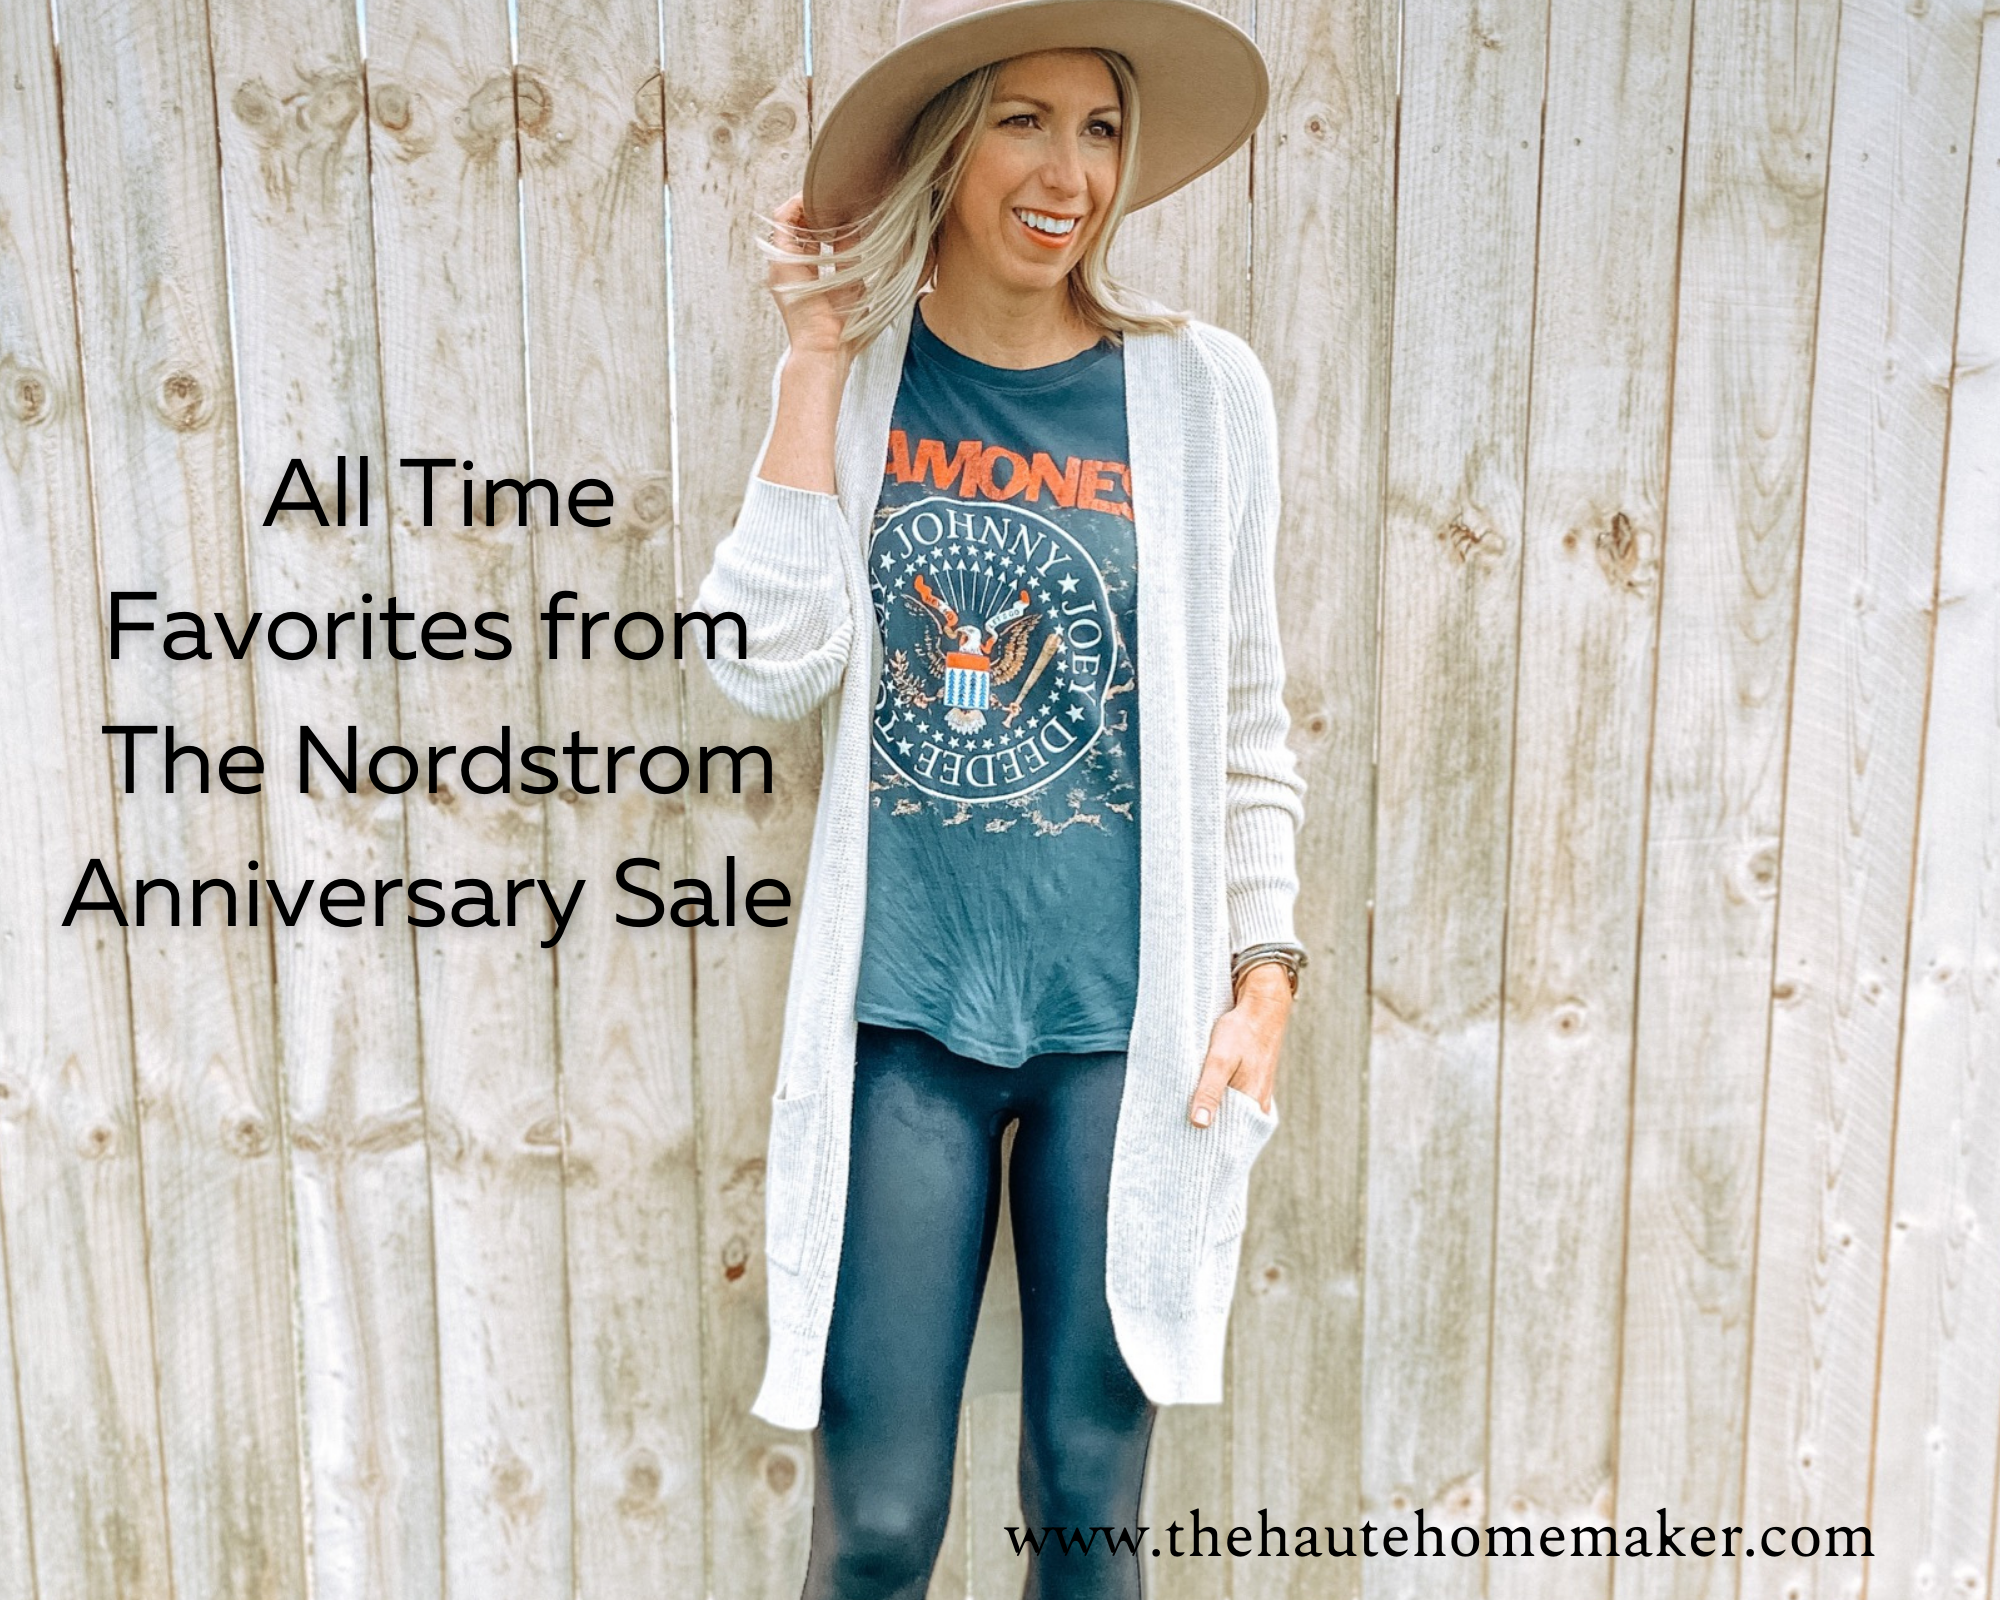 10 Nordstrom Anniversary Sale 2022 Bra Deals to Shop